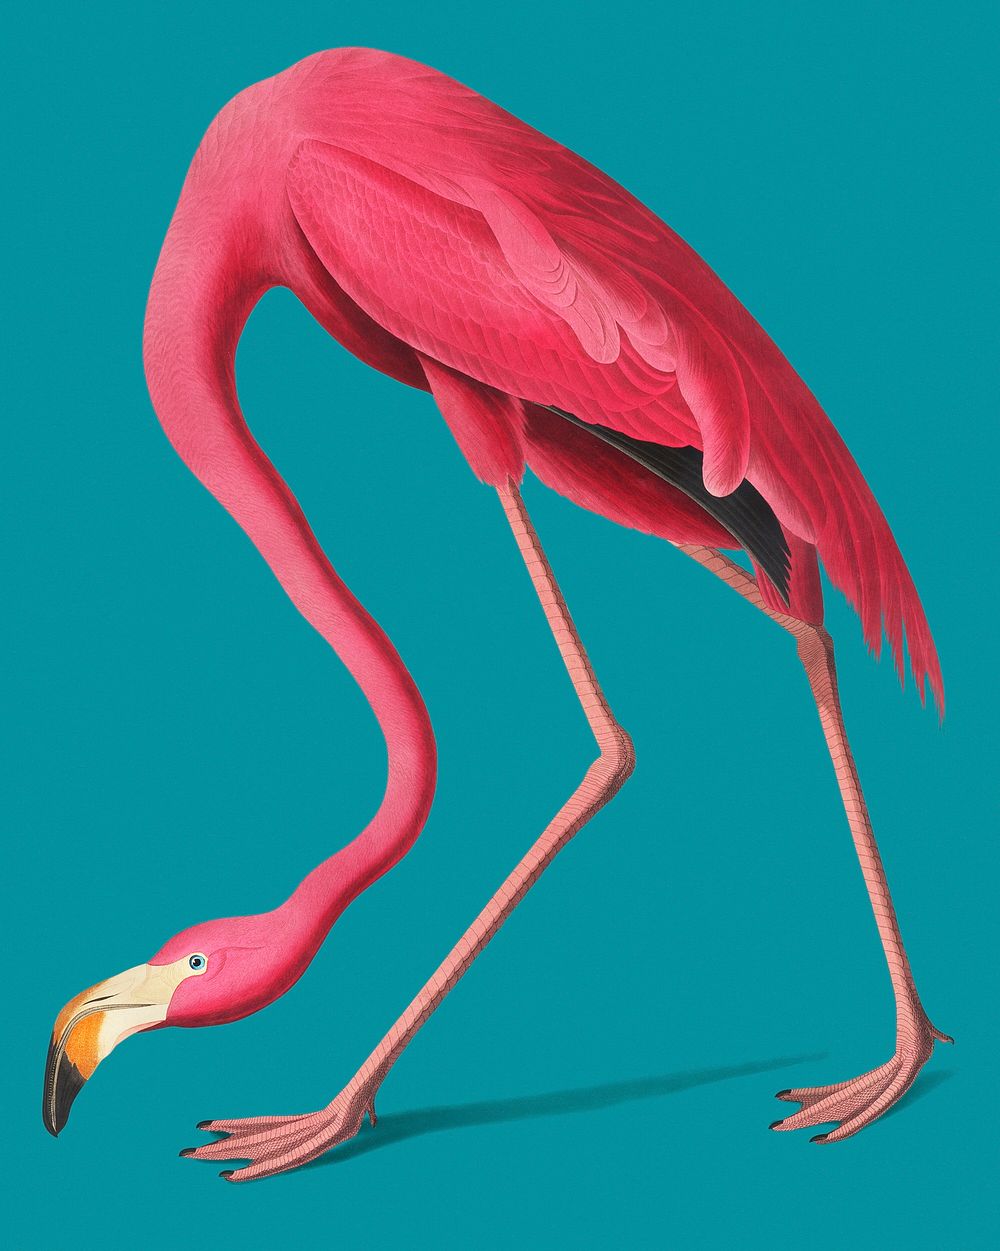 Vintage Illustration of Pink Flamingo.